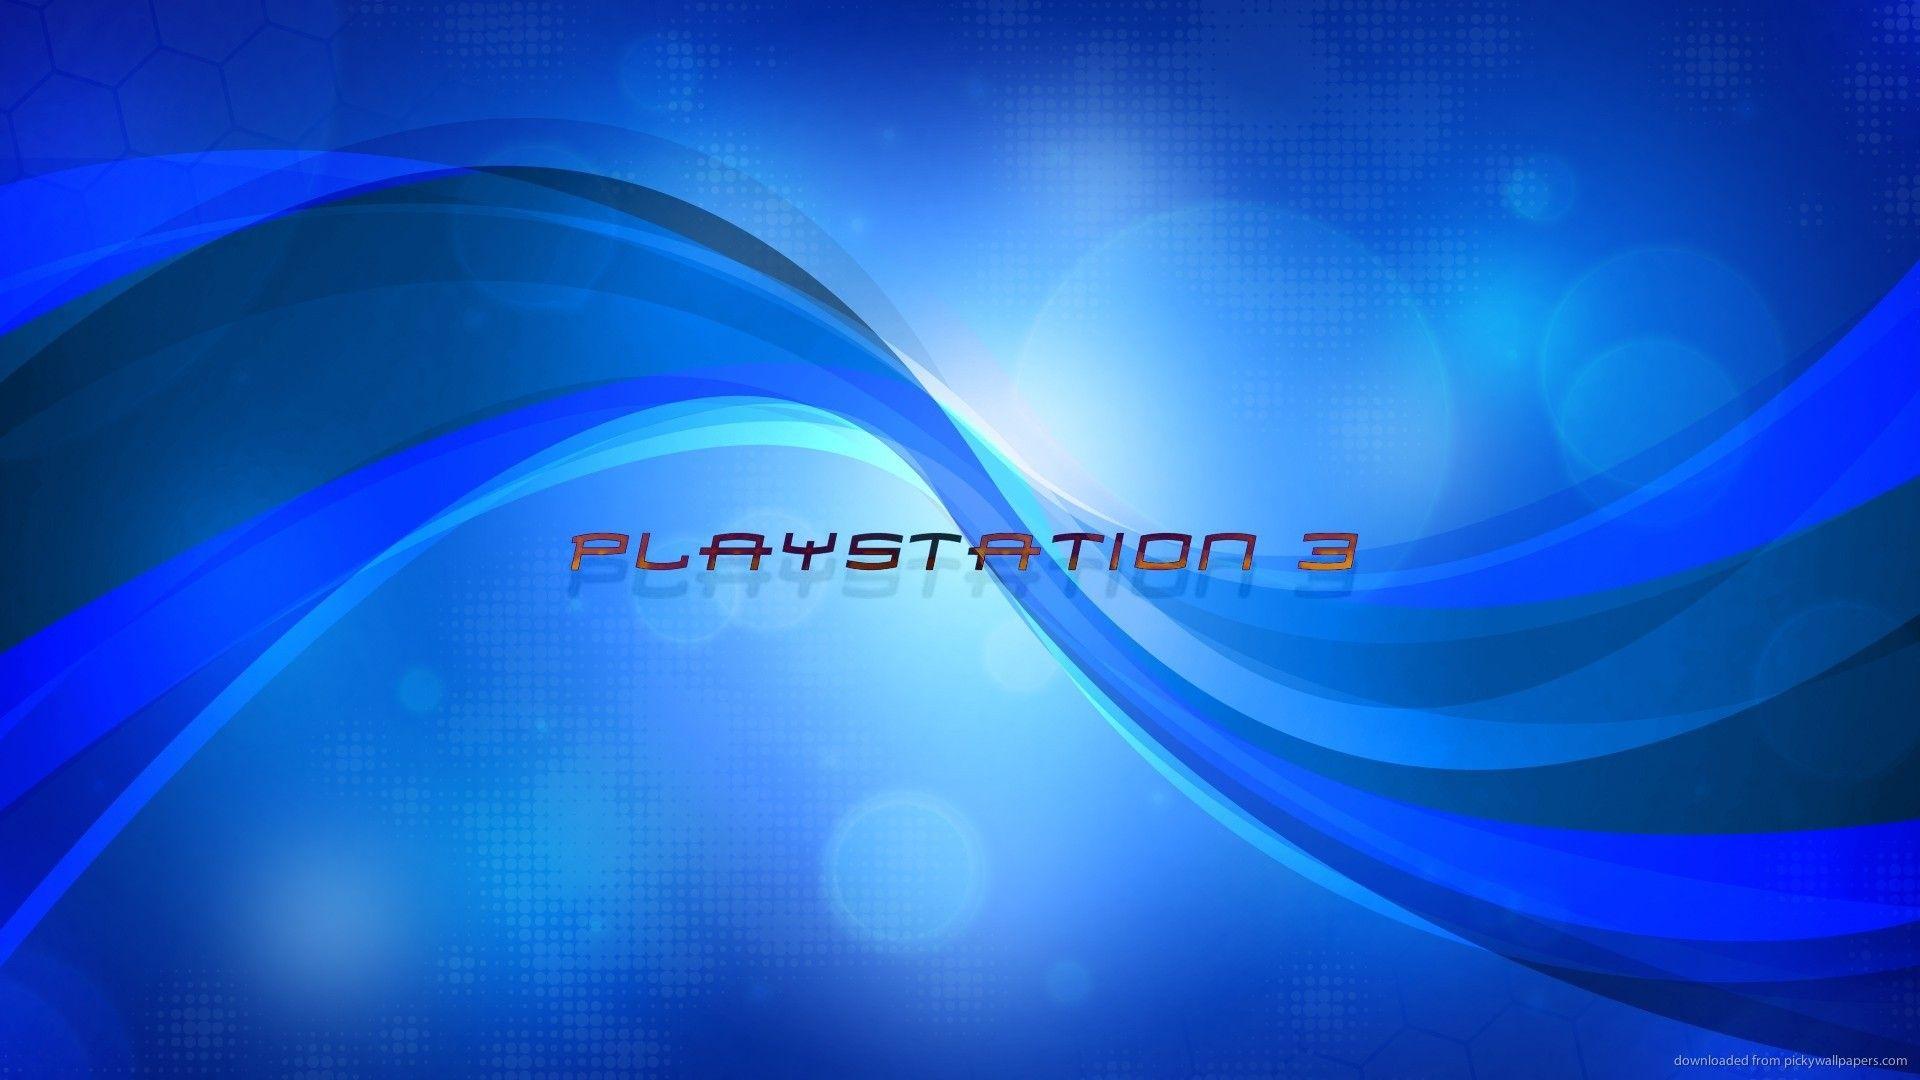 Playstation Logo Wallpaper